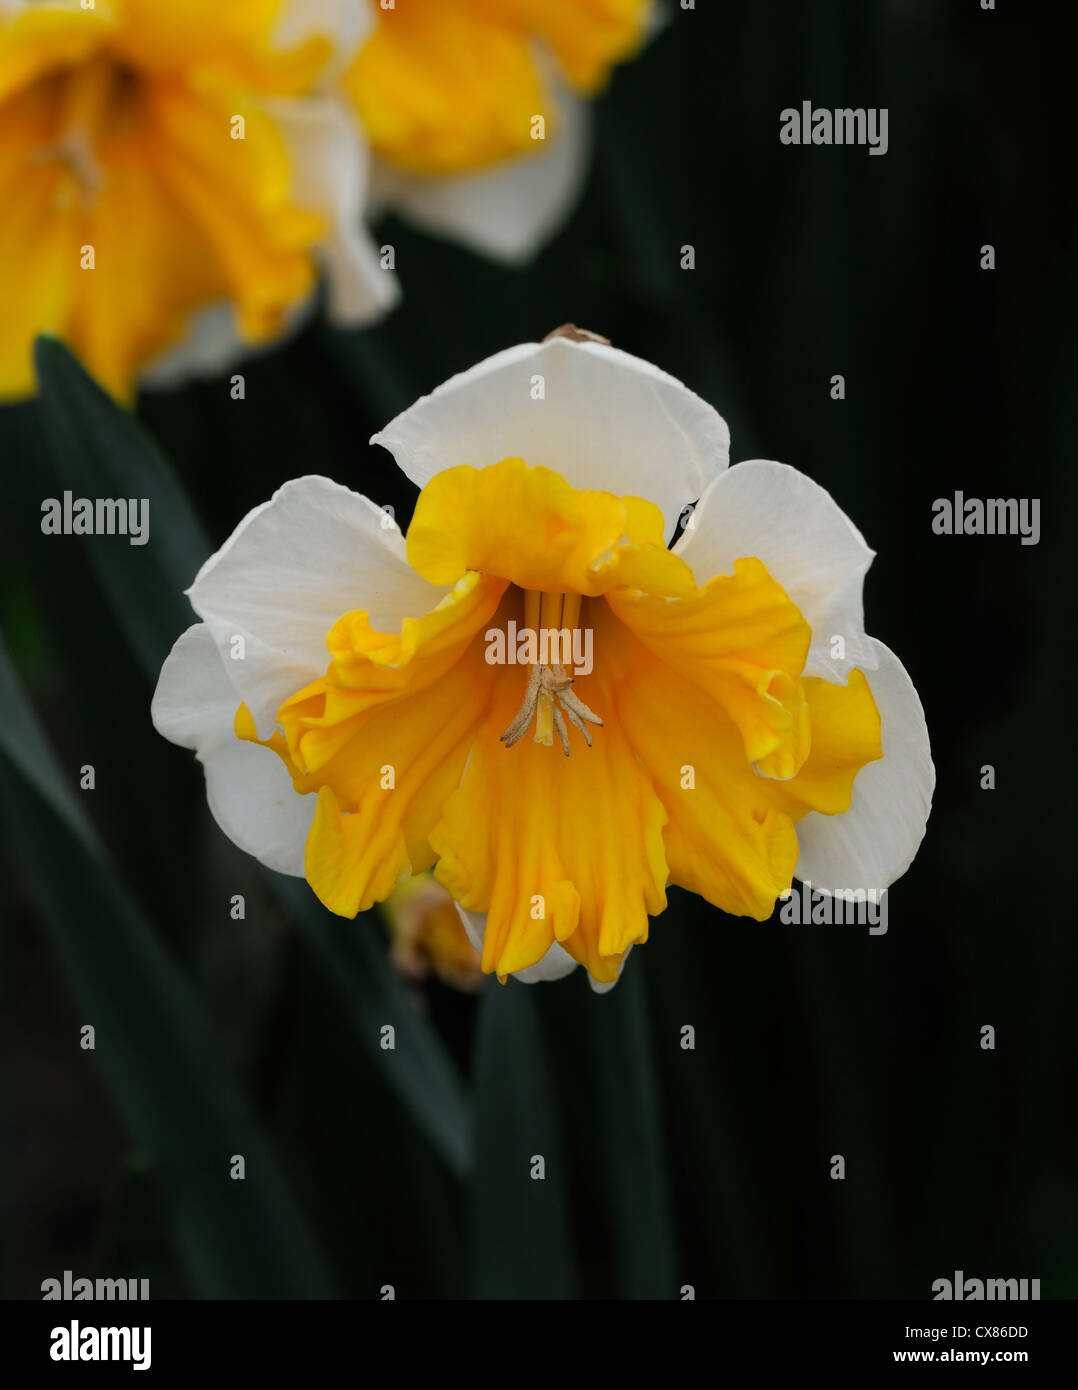 Narcissus aranciera split corona a tazza giallo arancio bianco ritratti vegetali petali di fiori narcisi narcisi bulbi molla Foto Stock